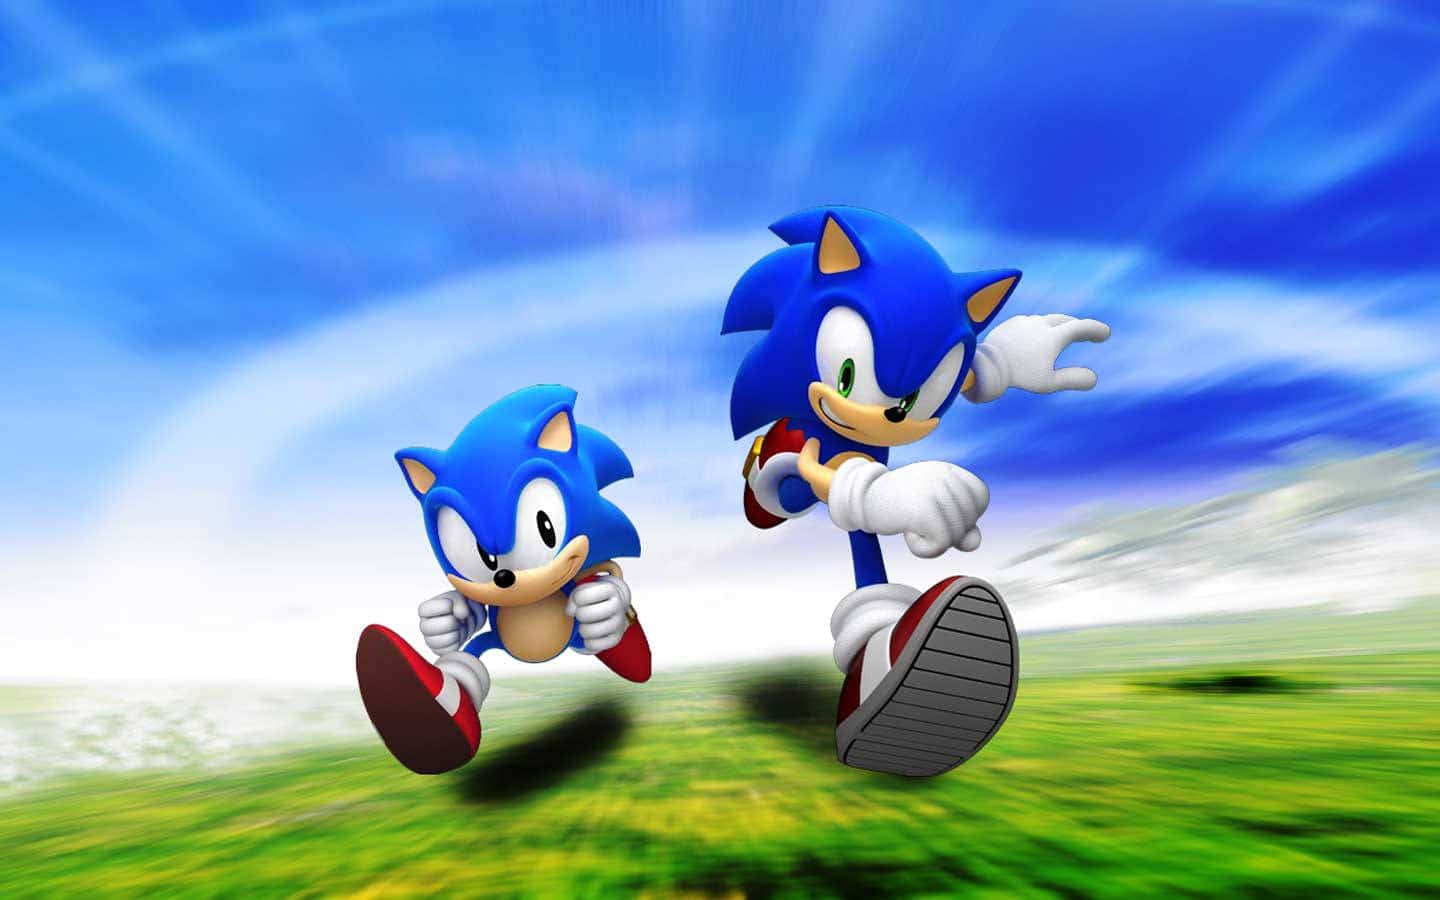 Sonicthe Hedgehog Corriendo A Toda Velocidad Por Un Paisaje Lleno De Colores.